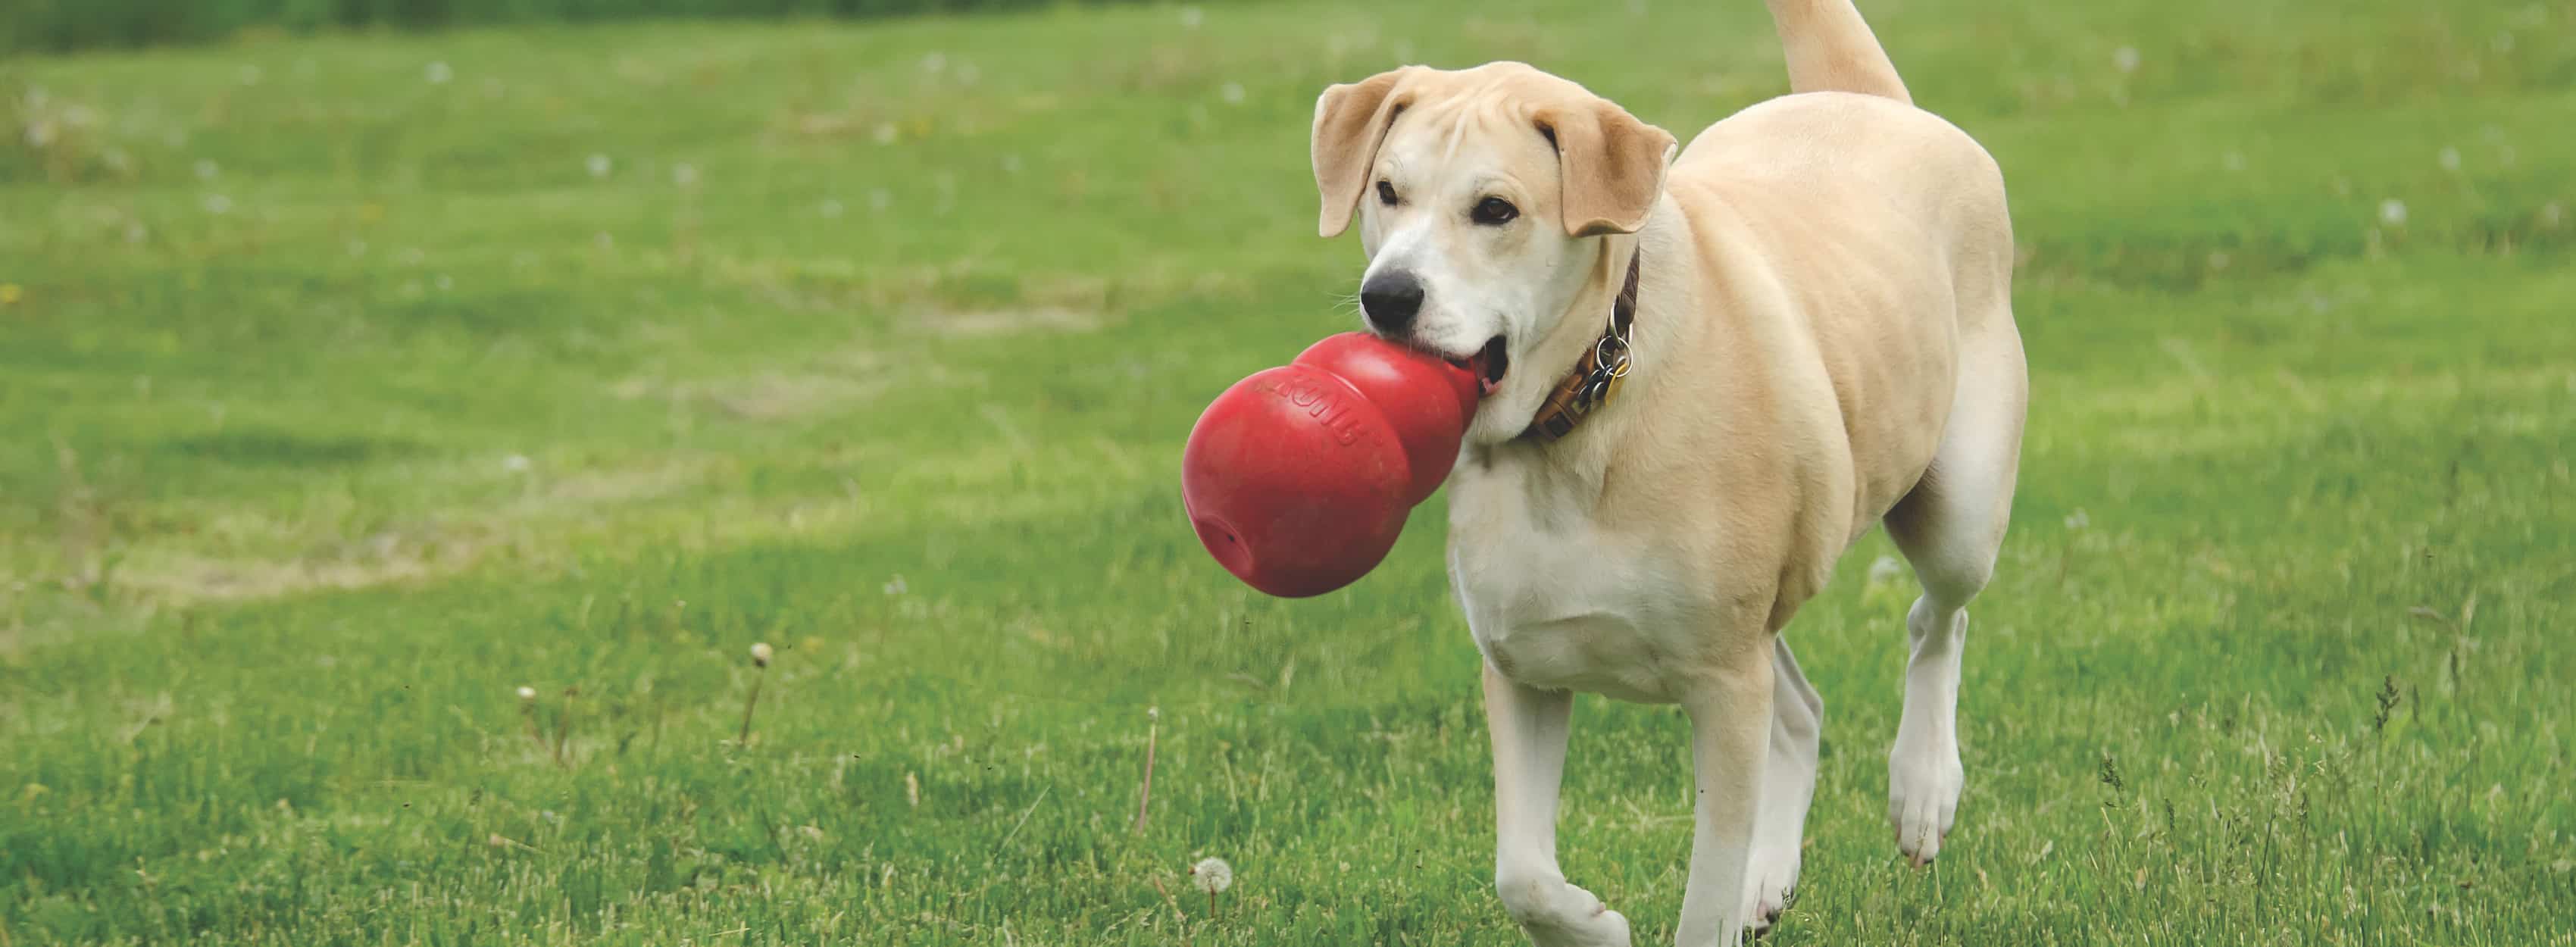 Golden hund løber med stort KONG-legetøj gennem græs.